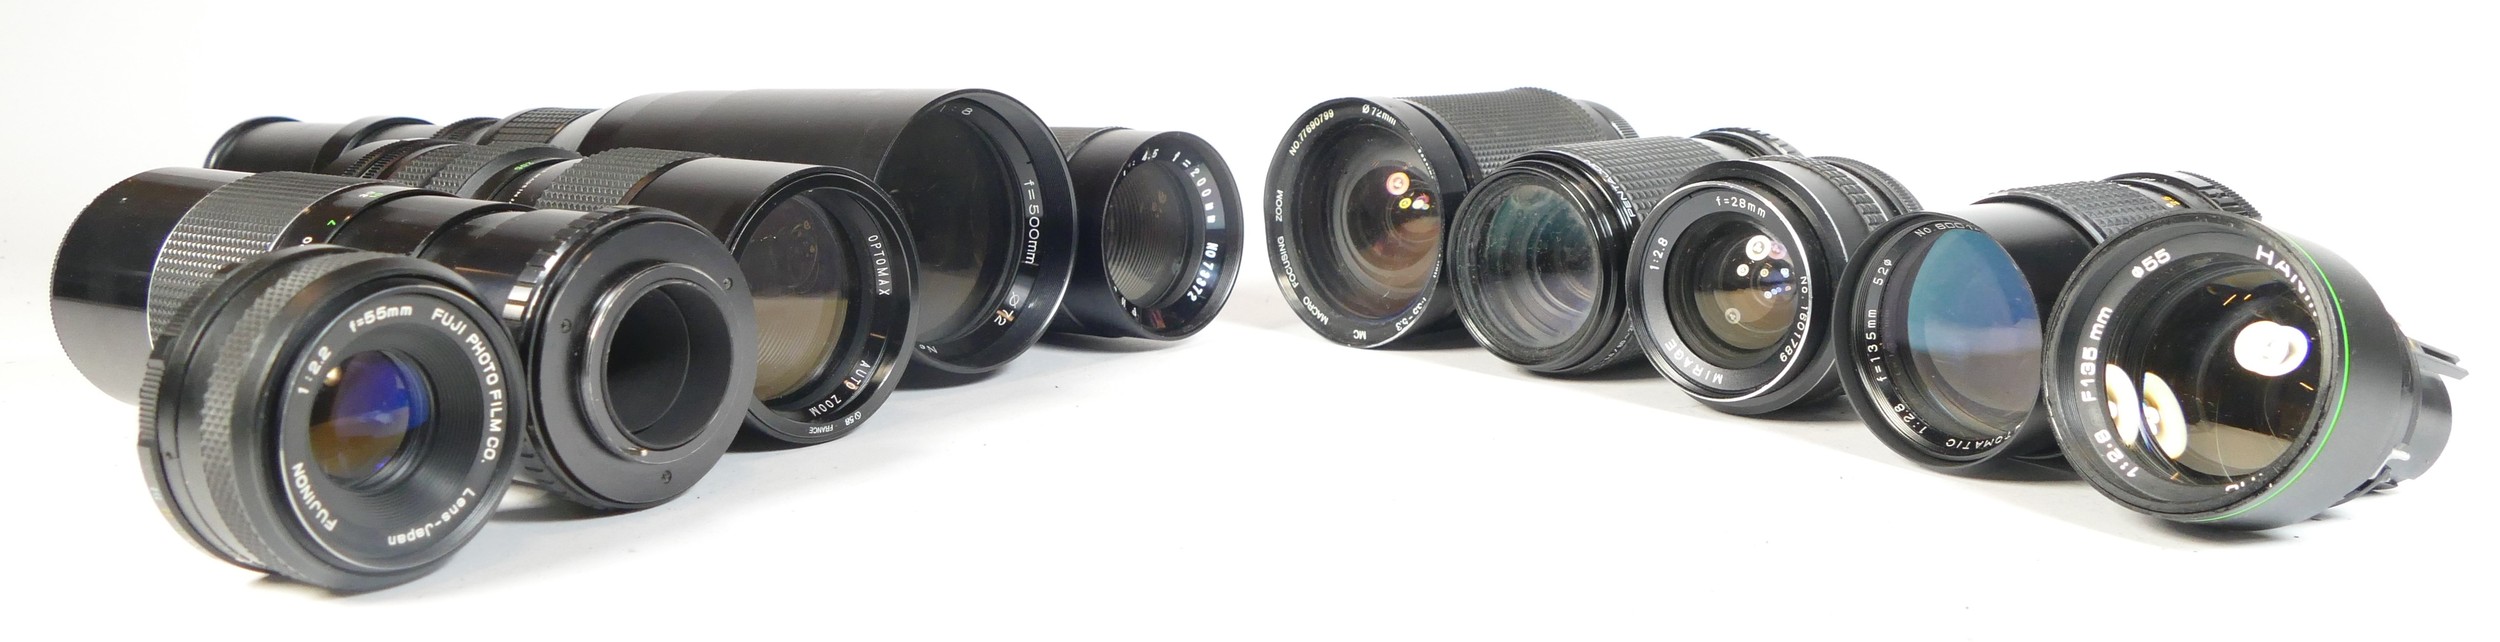 Twelve SLR vintage film cameras to include a Praktica B100, a Zenit E, a Fujica STX-1 and a - Bild 3 aus 3